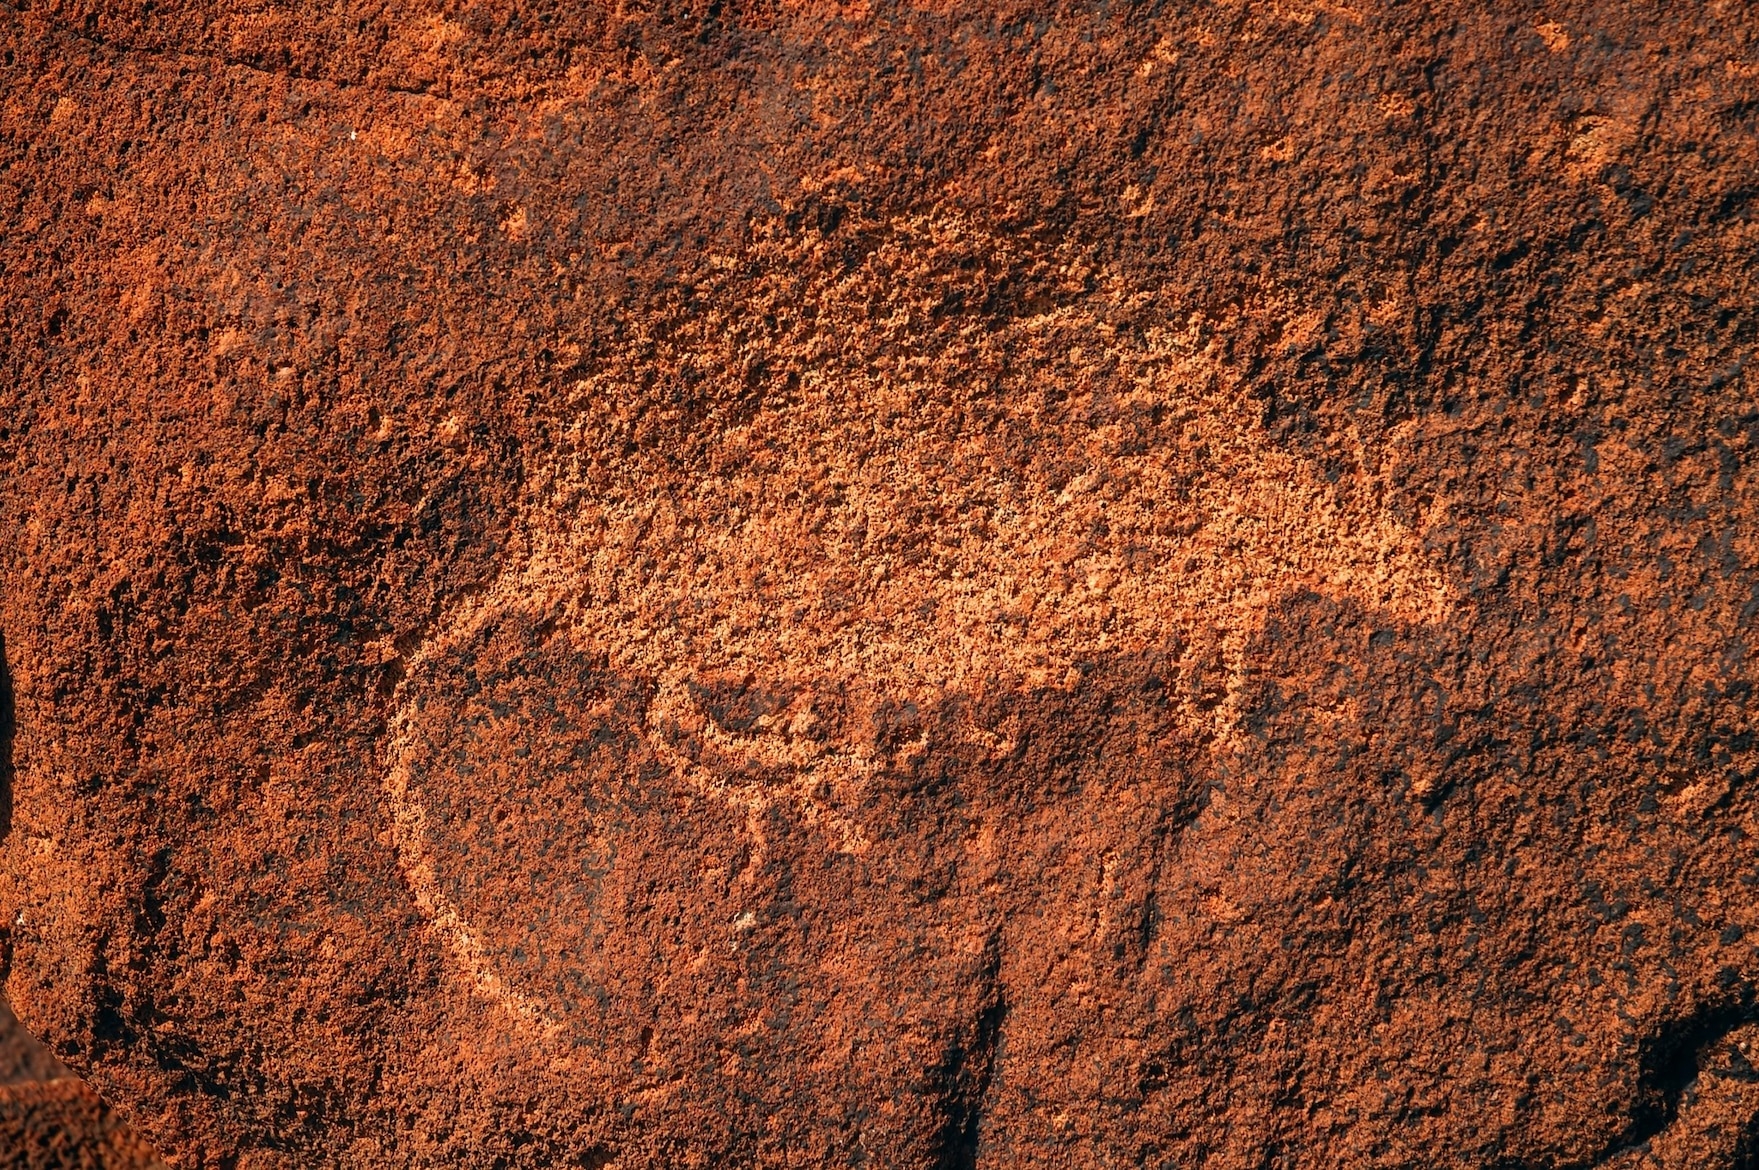 穆魯朱加的岩雕描繪著似人的形體、人臉，以及數千年前棲息於此的動物。PHOTOGRAPH BY SUZANNE LONG, ALAMY STOCK PHOTO